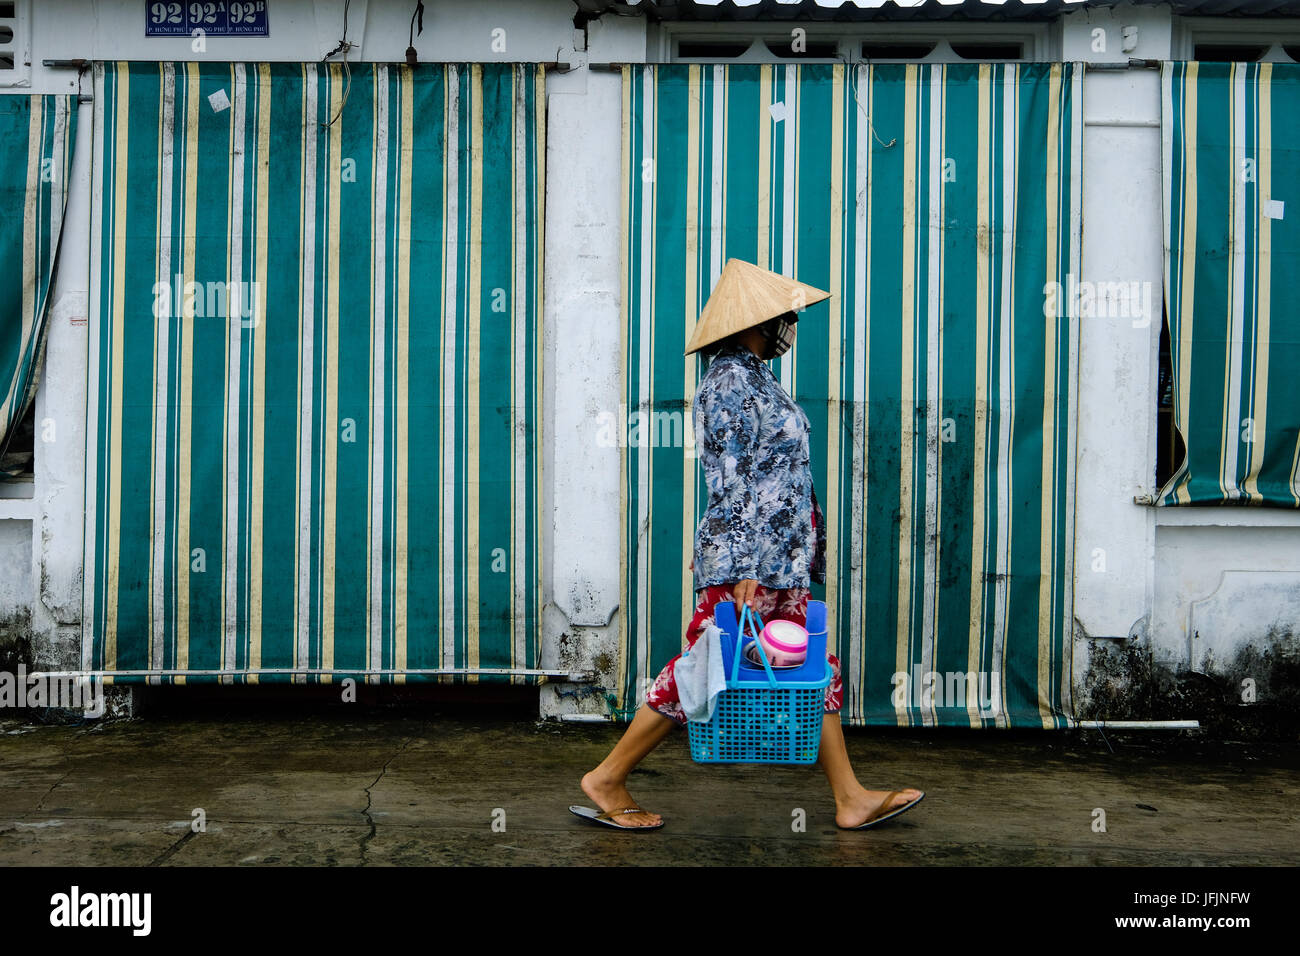 I residenti, i commercianti, i venditori ambulanti di andare circa le loro attività quotidiane a Can Tho sul Delta del Mekong, Vietnam Foto Stock